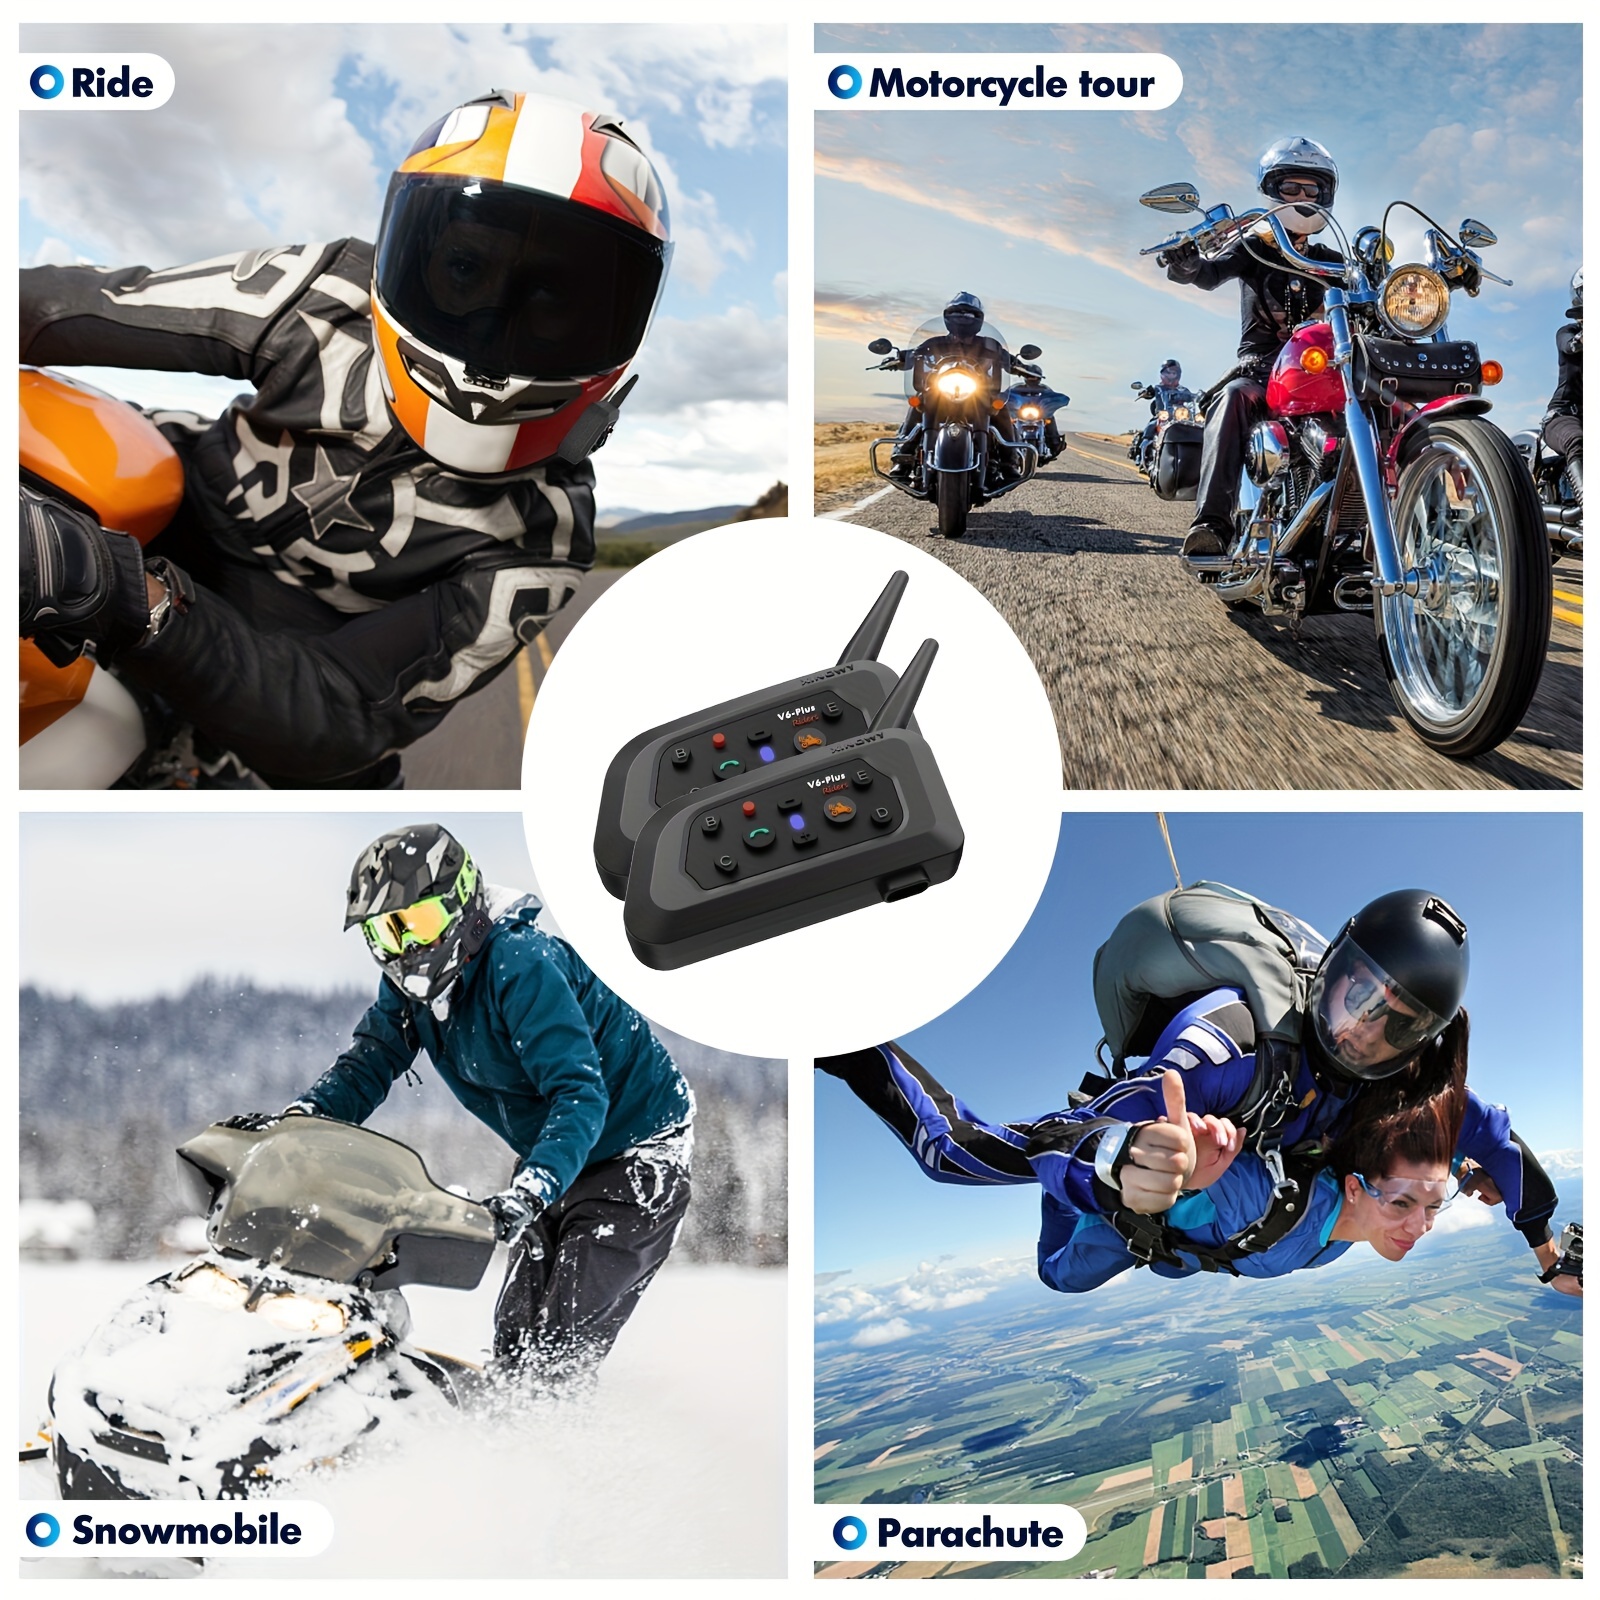 Acheter Interphone Bluetooth pour moto, casque de moto, prise en